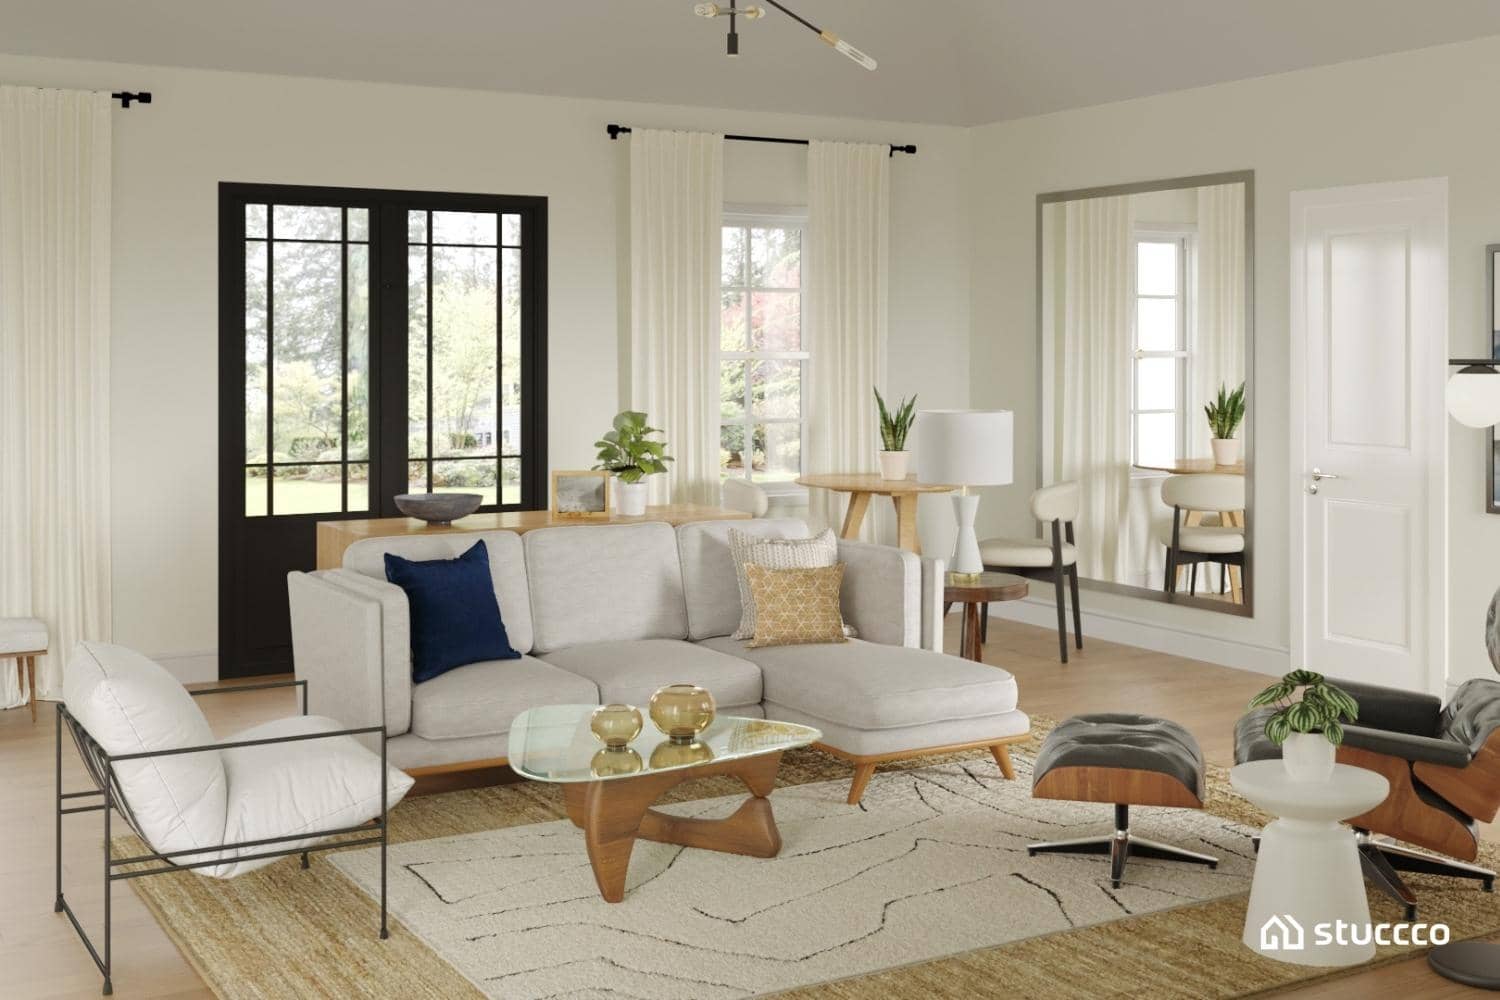 Stuccco living room interior design, neutral space